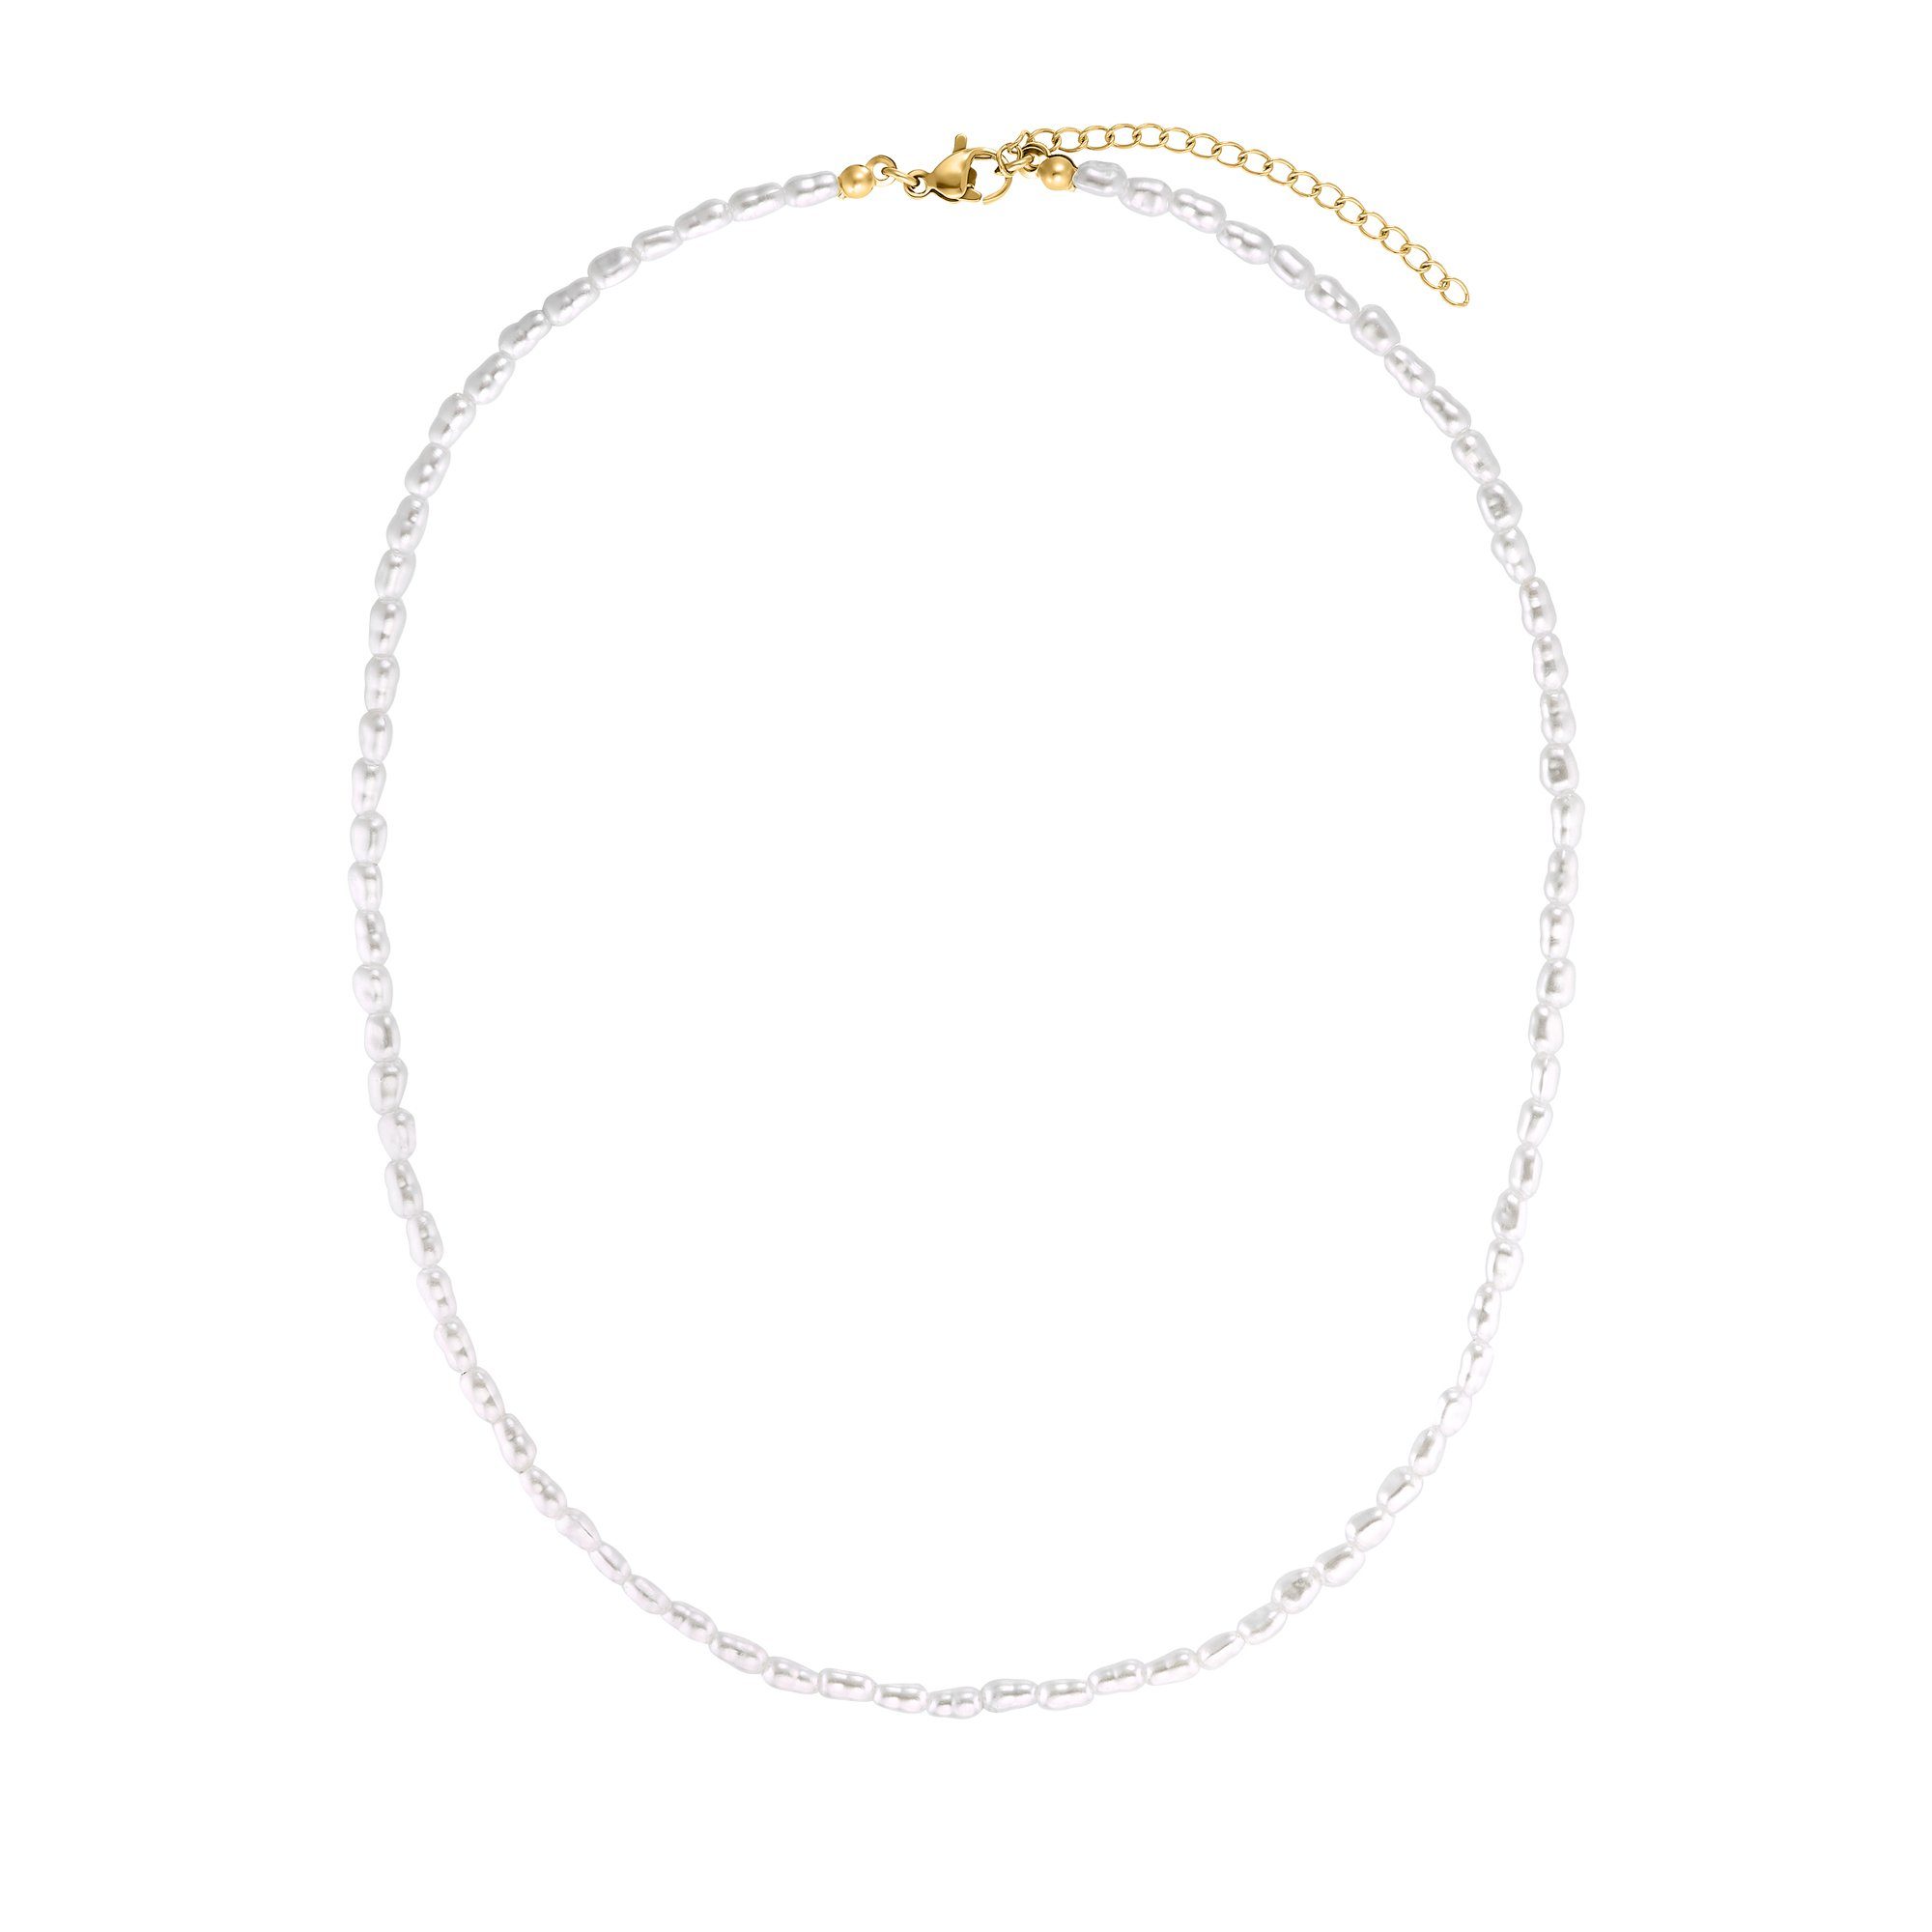 Heideman Collier Marta silberfarben poliert (inkl. Geschenkverpackung), ausgefallene Kette mit Perlen für Frauen goldfarben | Ketten ohne Anhänger